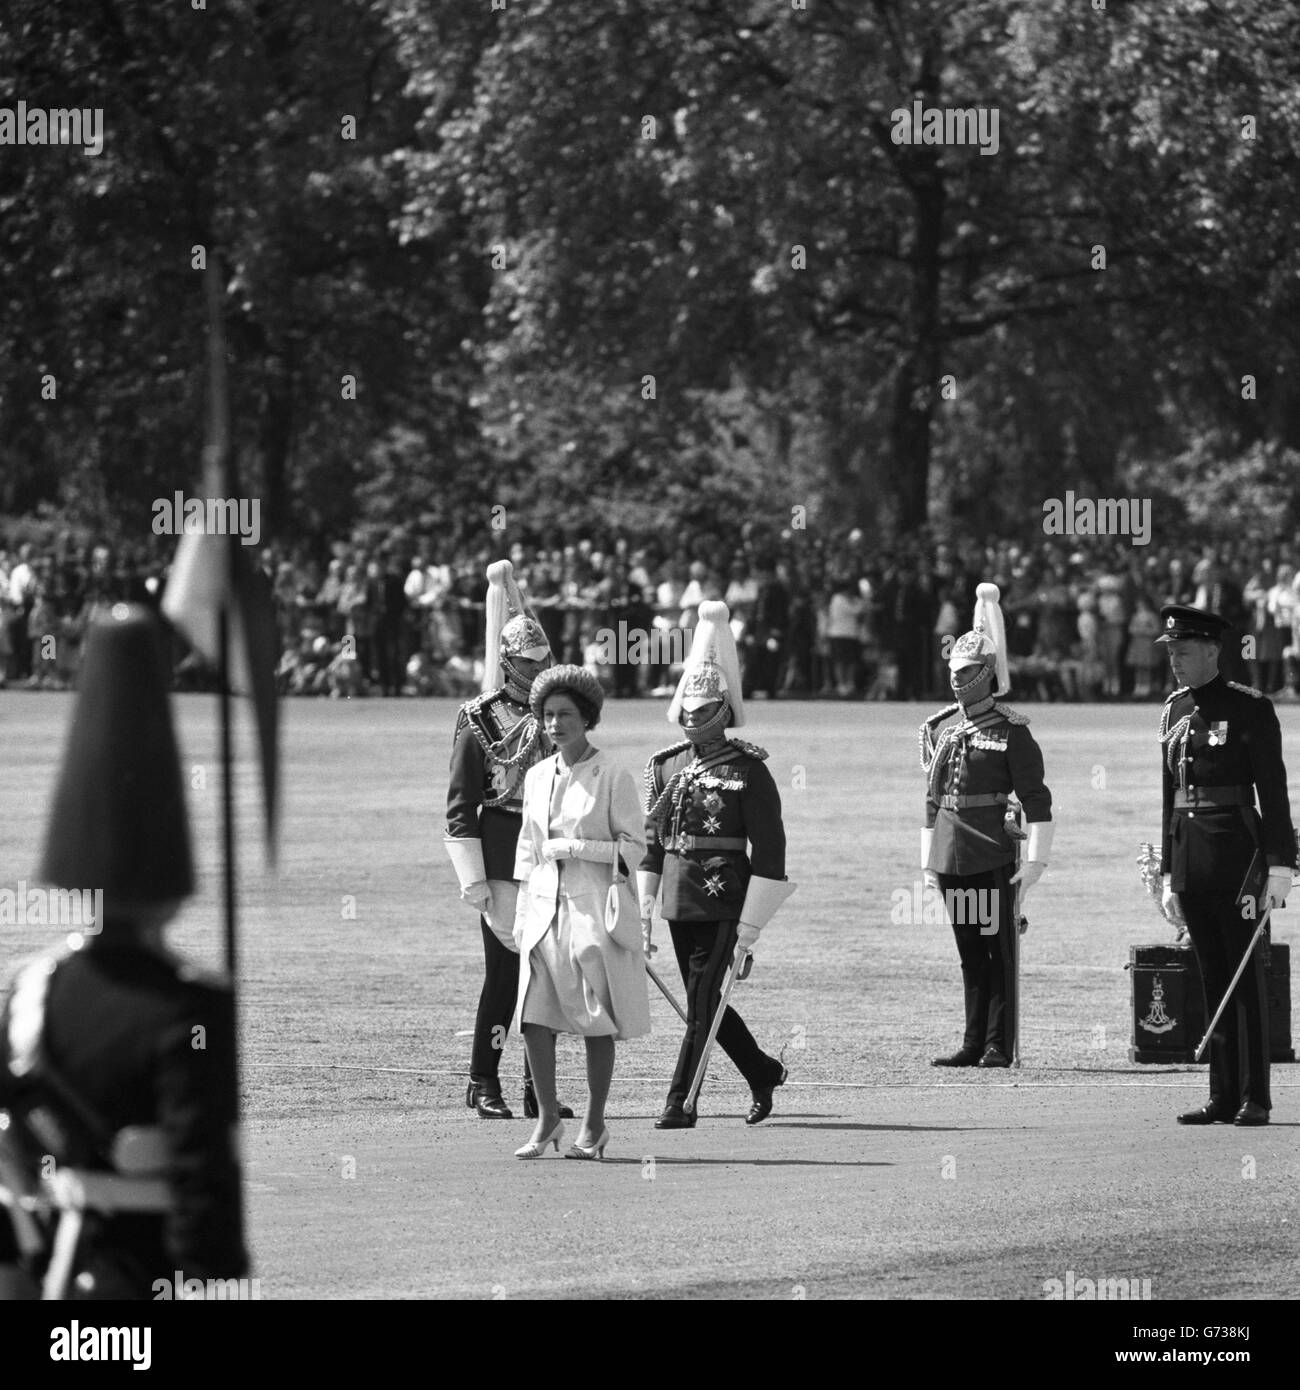 La Reine, en tant que colonel en chef, présente de nouvelles normes à la cavalerie de la maison - les gardes de la vie et les gardes royaux du cheval (les Bleus) - pendant la parade des gardes du cheval à Londres. Banque D'Images